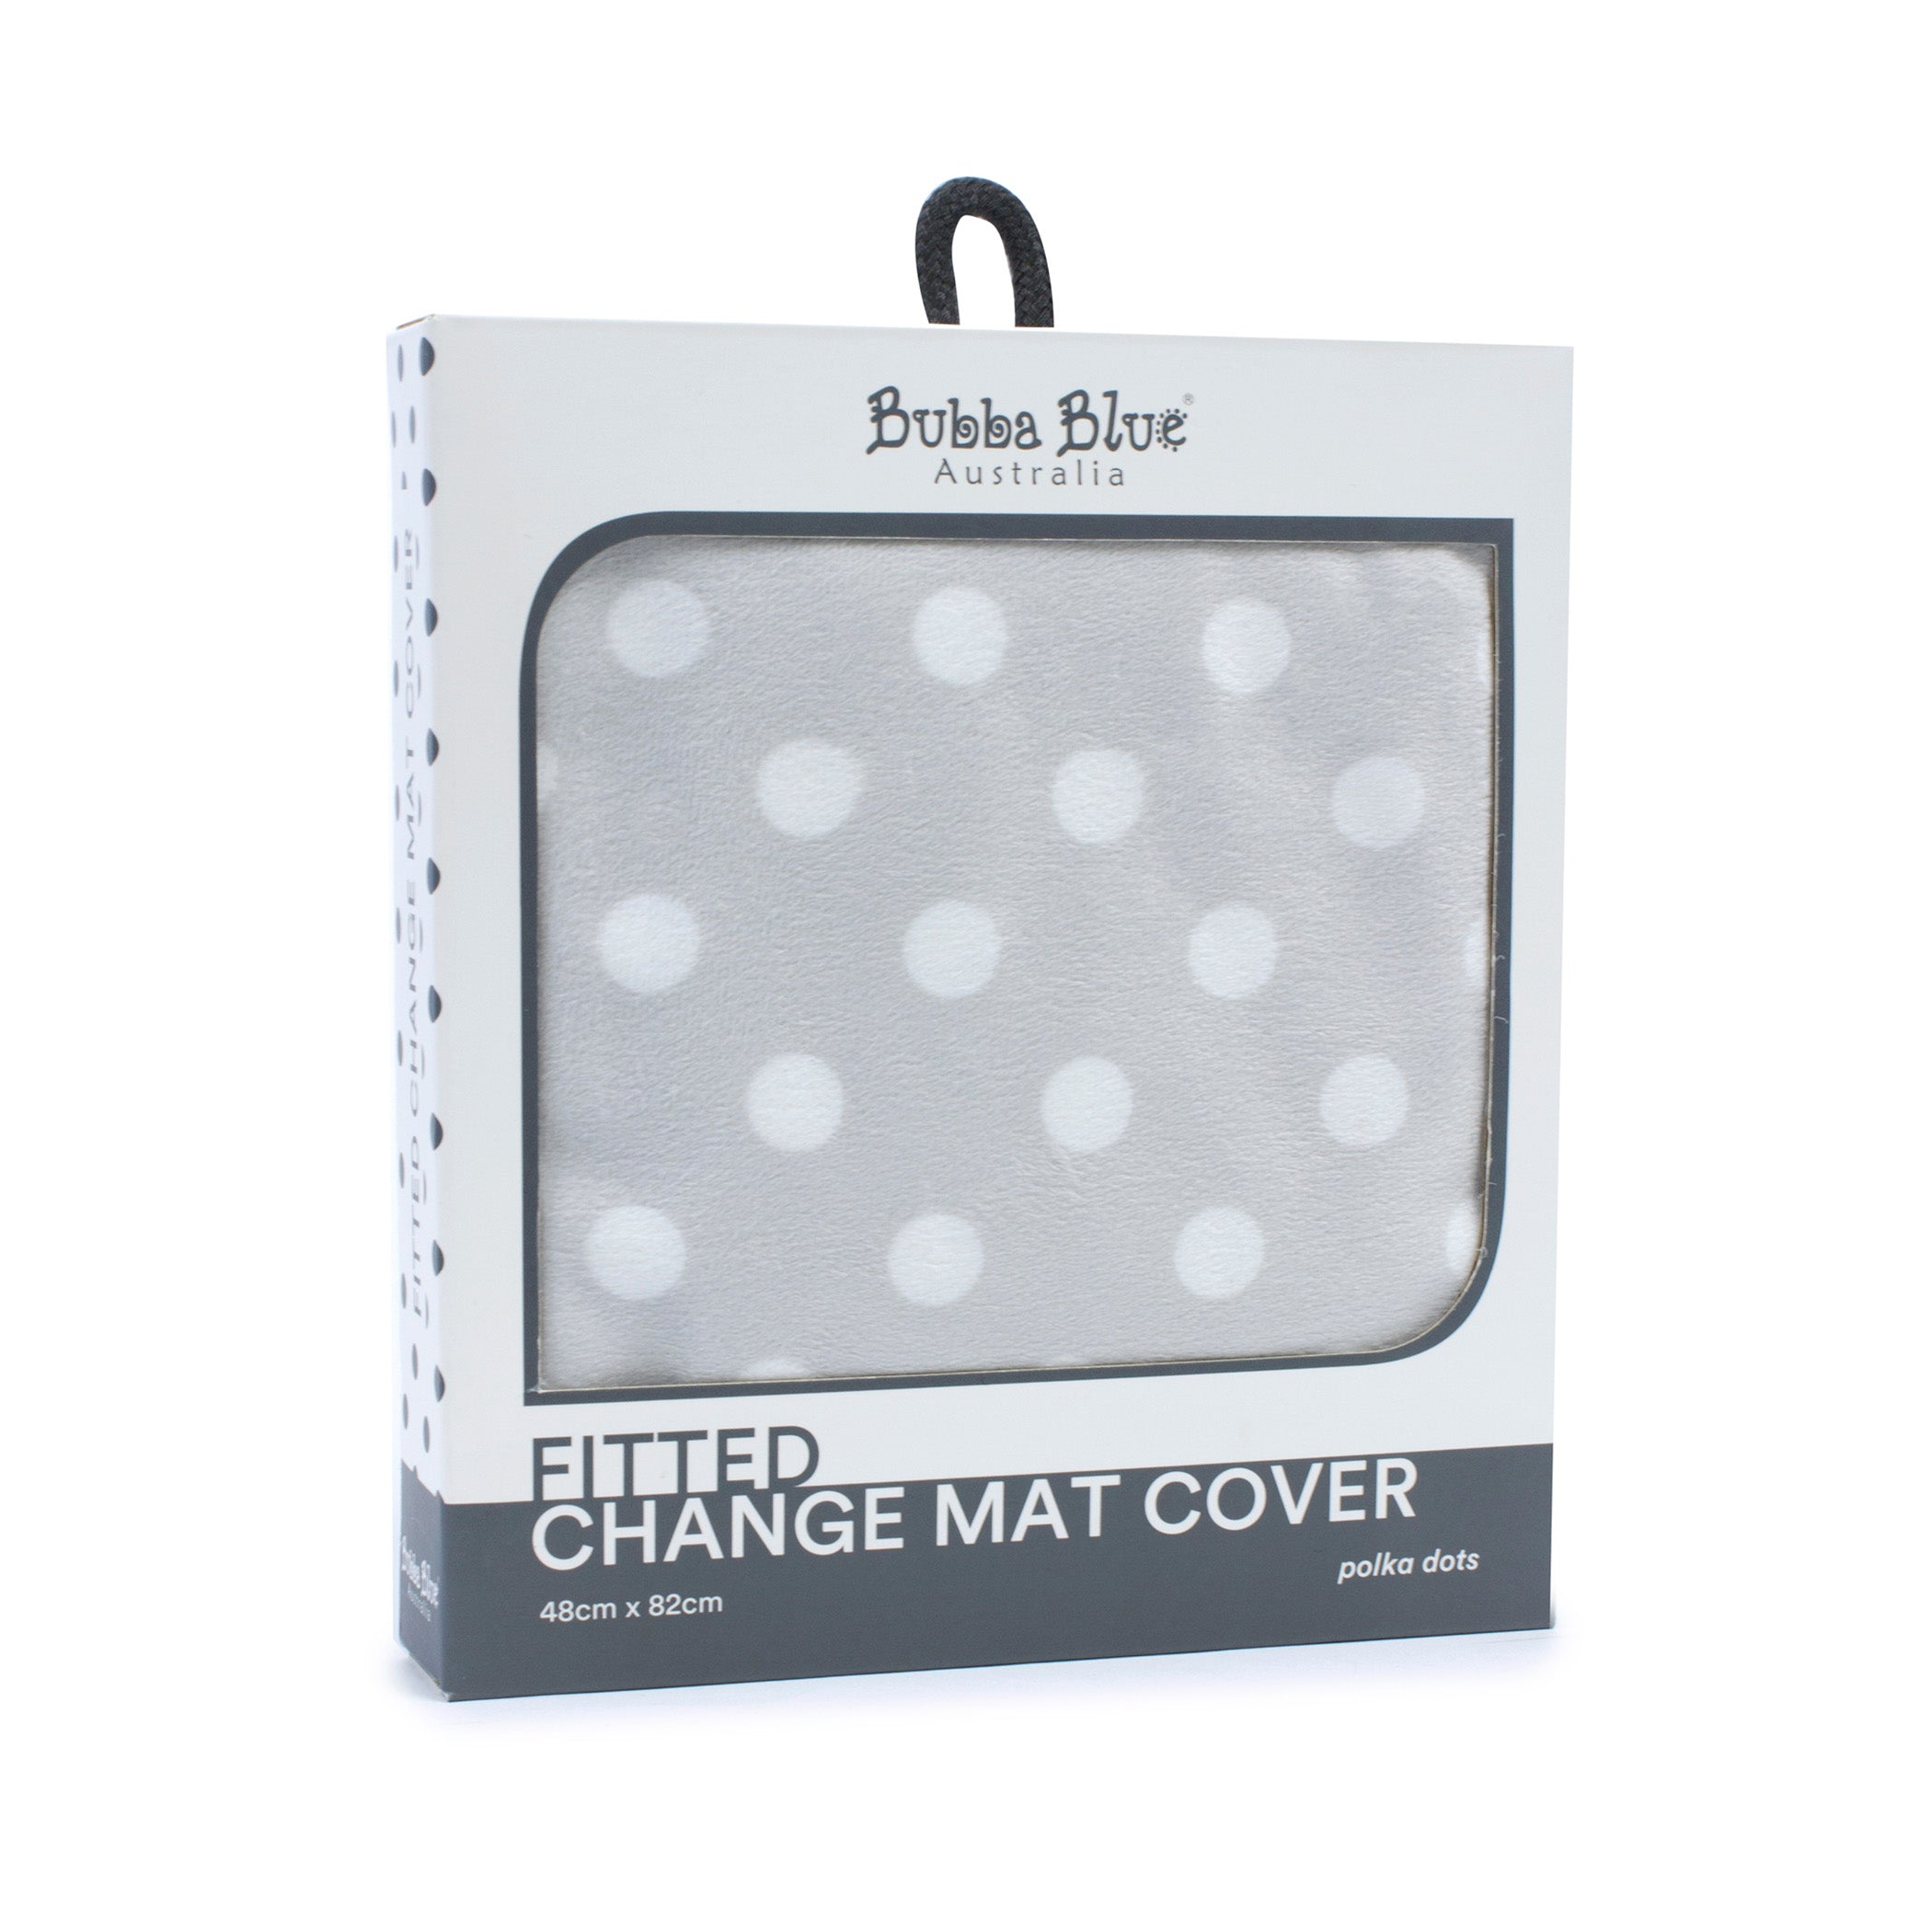 2x Polka Dots Change Mat Cover Bundle